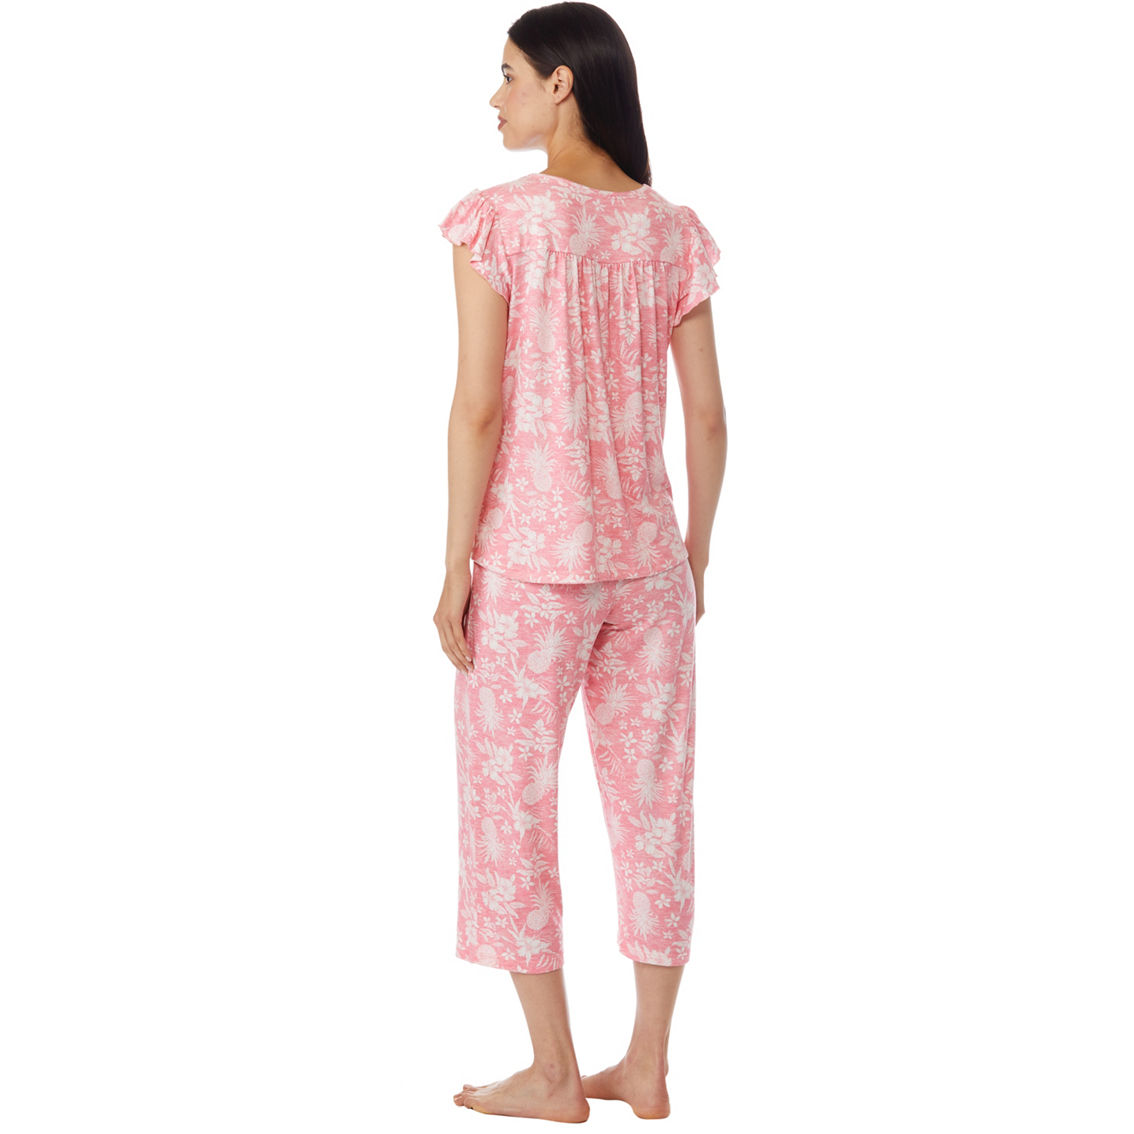 Rene Rofe Beautiful Breeze Capri Pajamas 2 Pc. Set | Pajamas & Robes ...